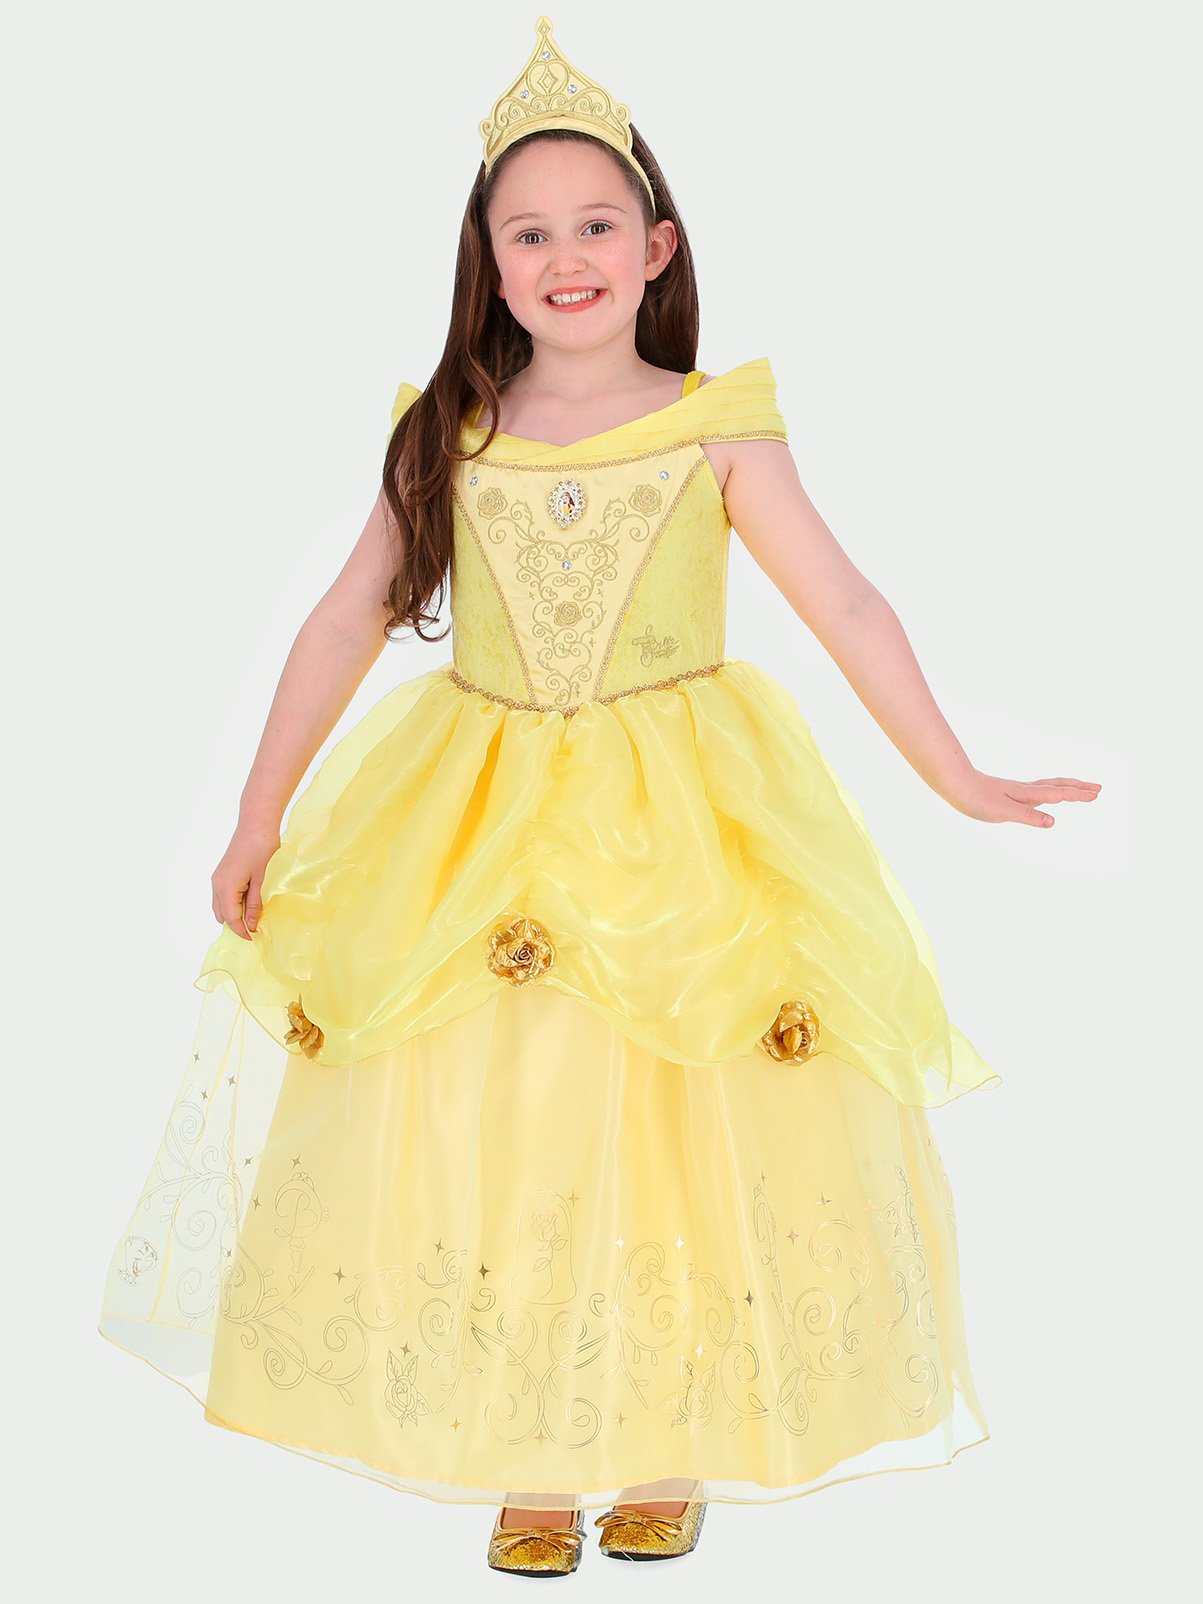 Buy Disney Princess Belle Costume - 3-4 Years